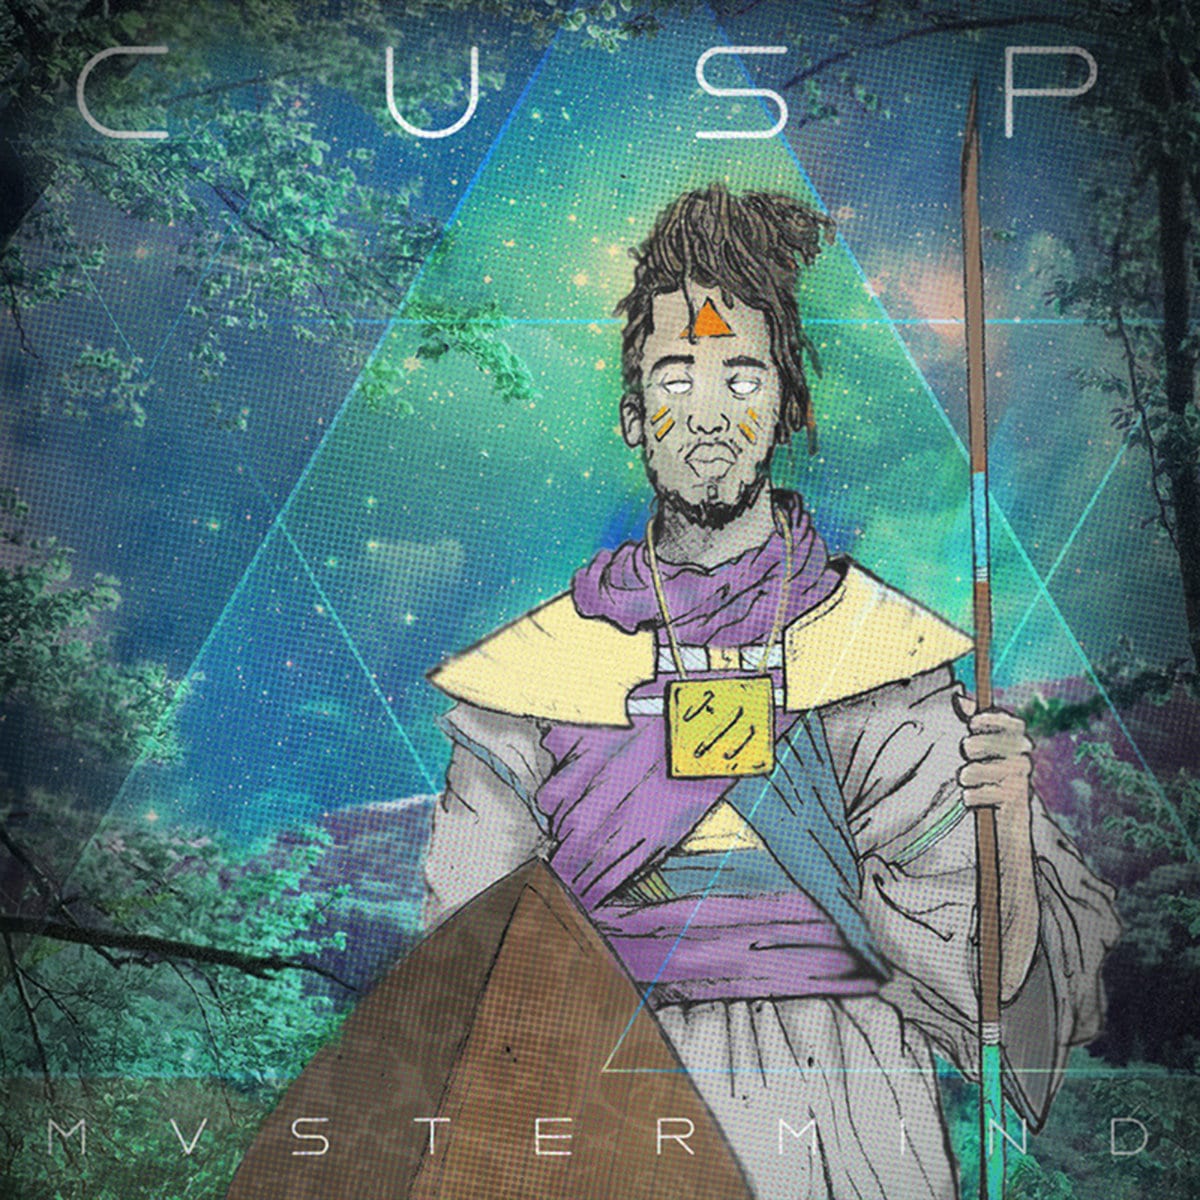 Mvstermind - "Cusp" (Release)